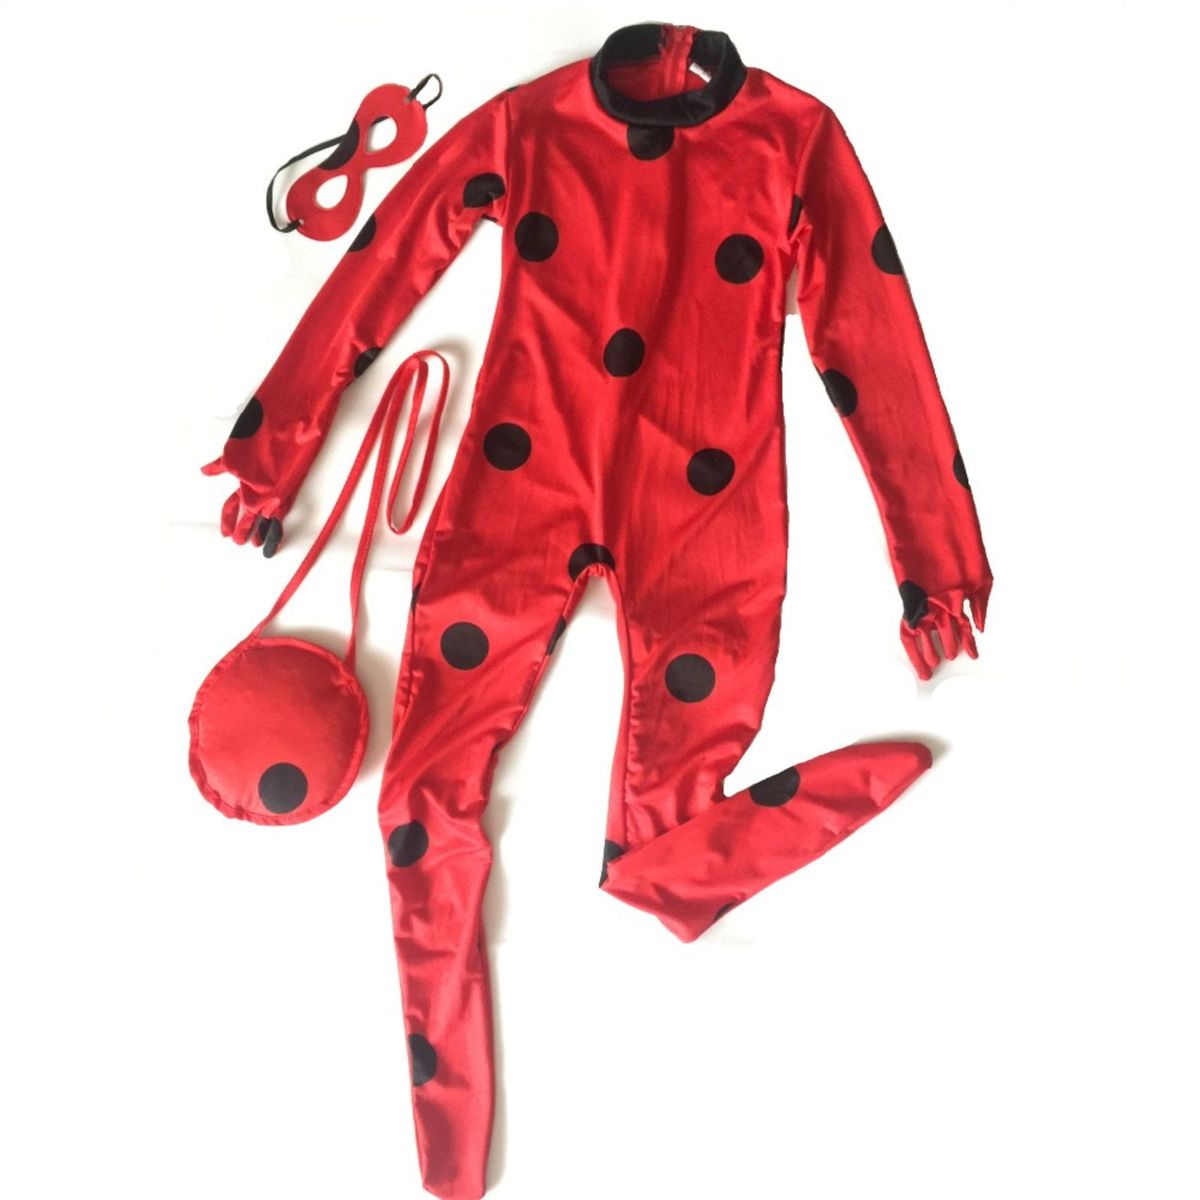 foto da roupa da ladybug